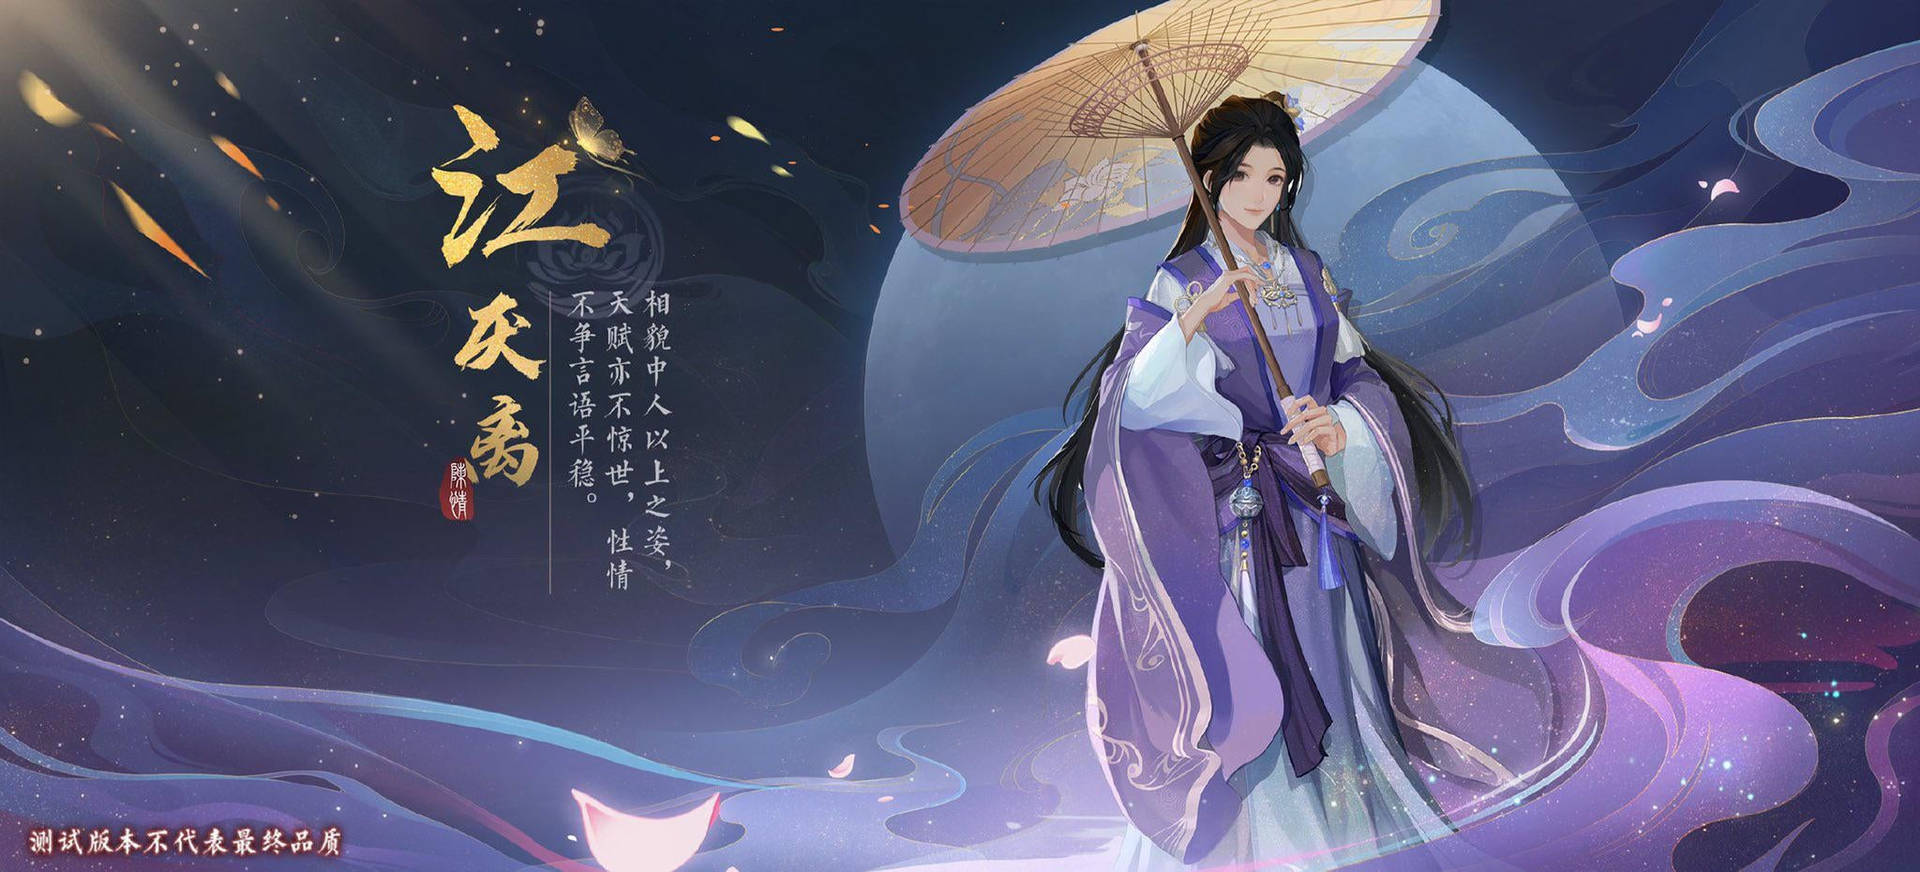 Jiang Yanli Game Poster Mo Dao Zu Shi Background